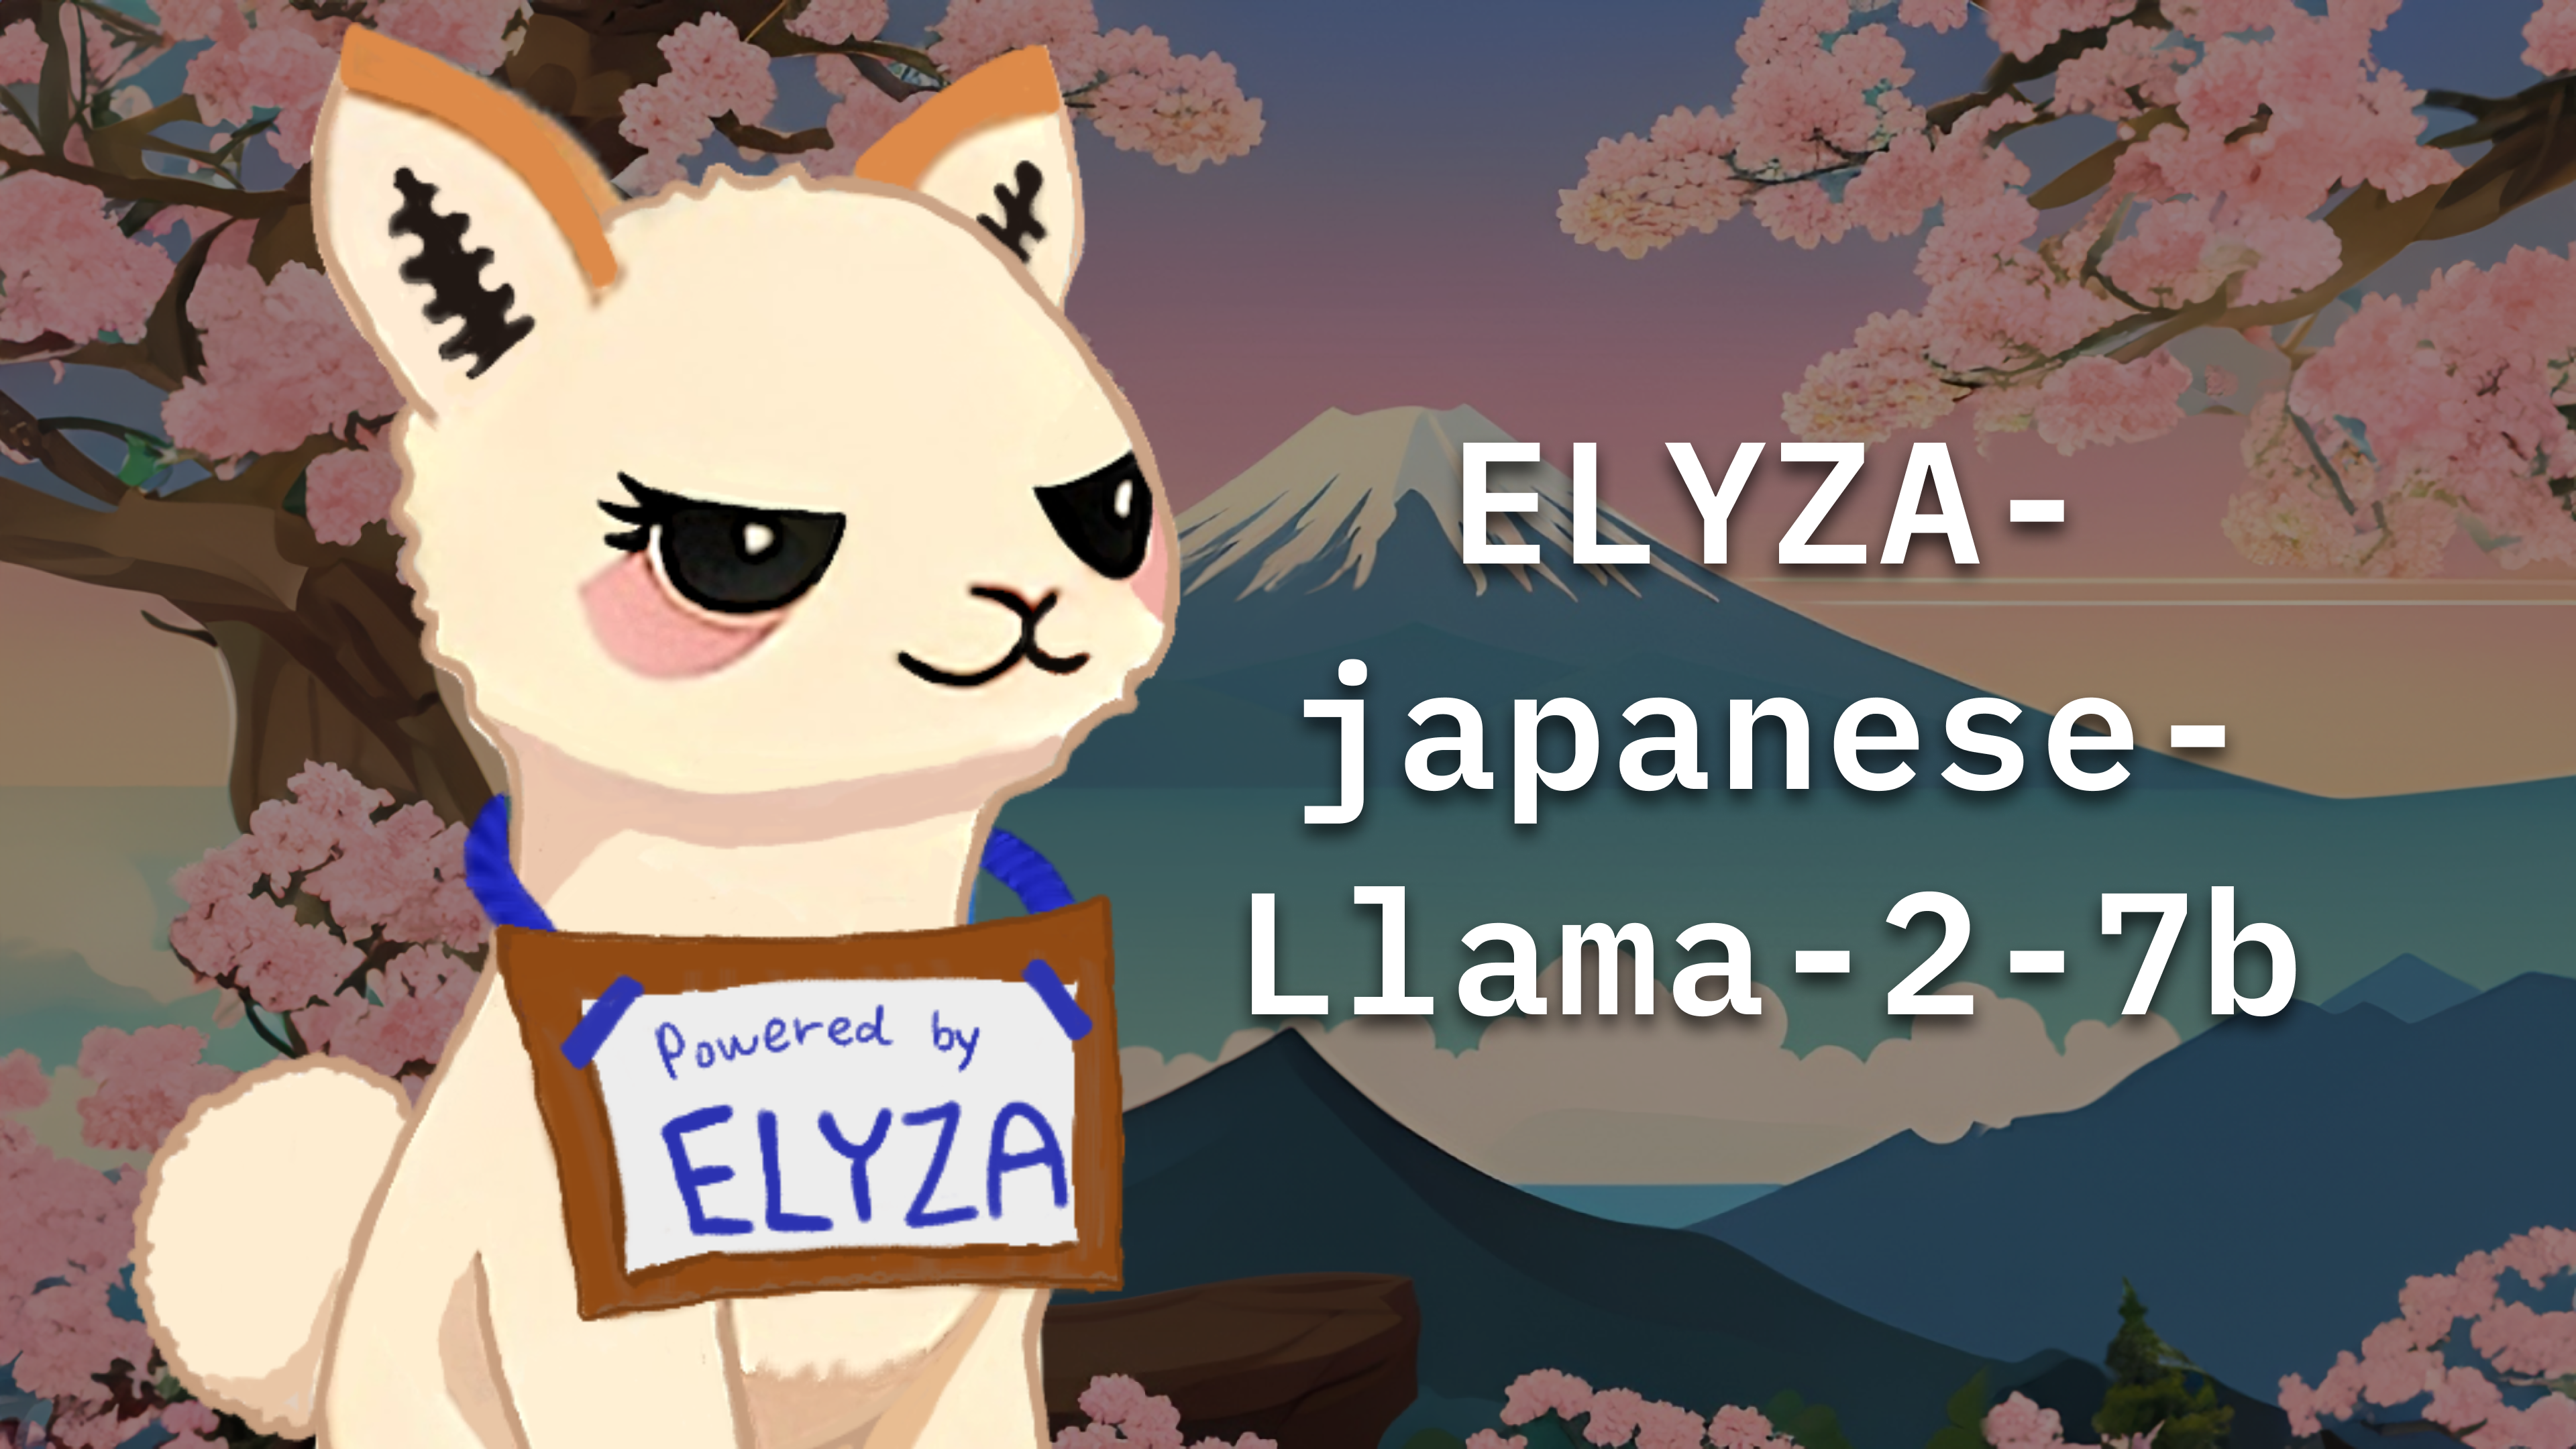 ELYZA-Japanese-Llama2-image